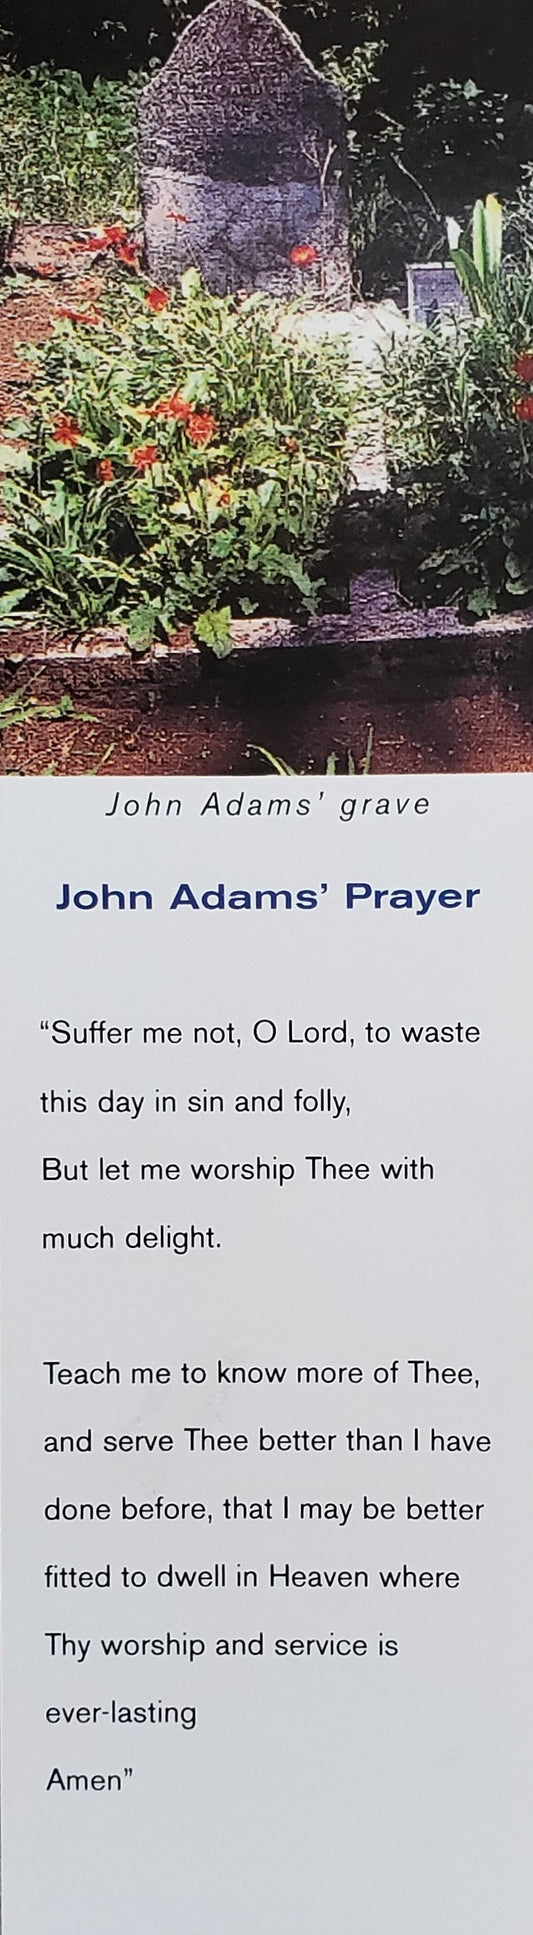 Bokmärke - John Adams Grave, kartong